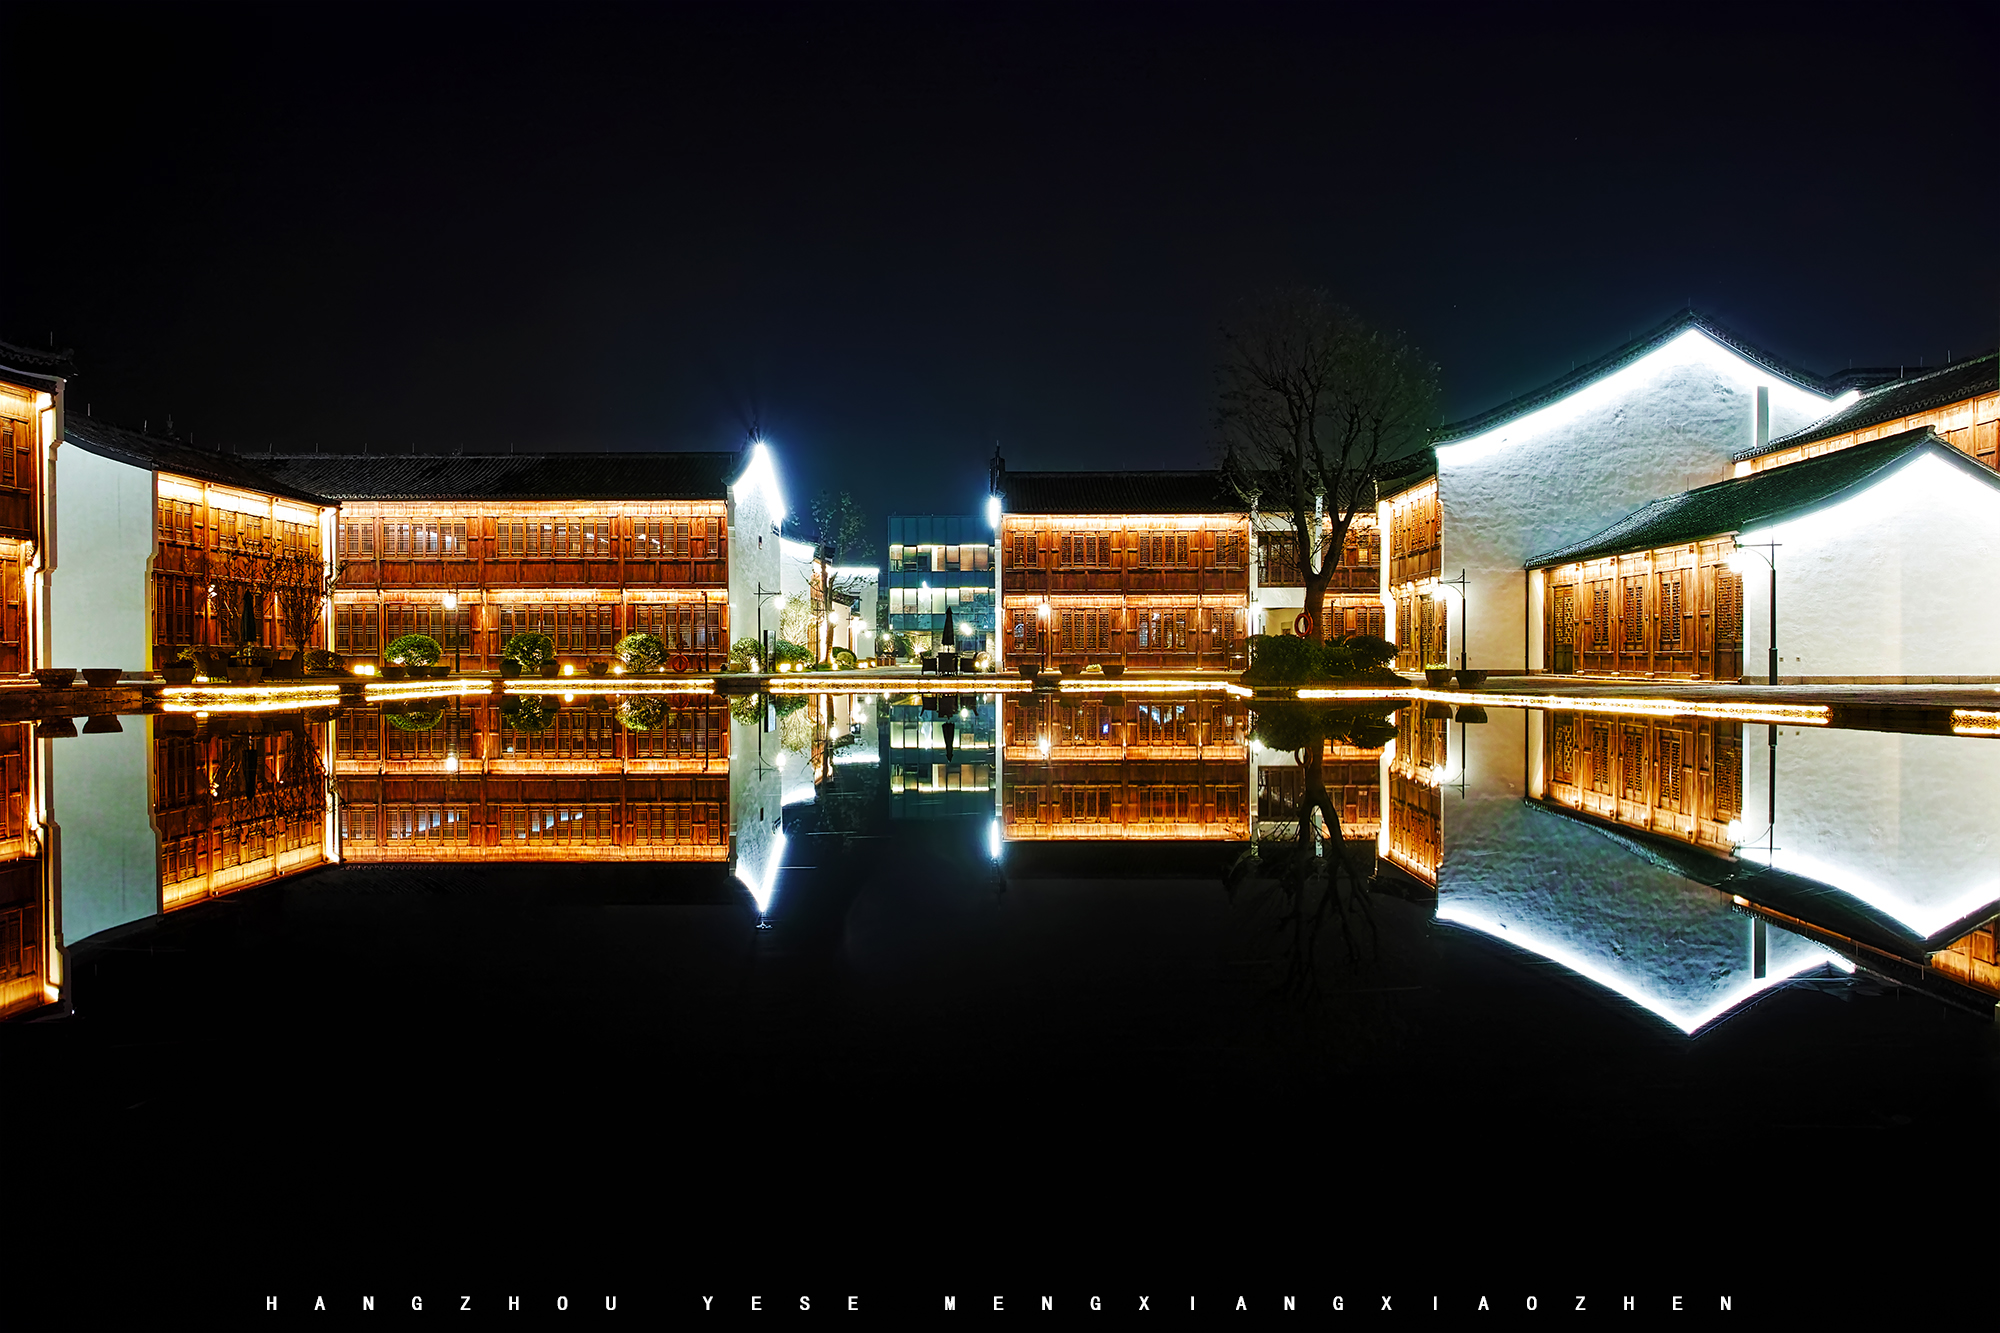 杭州梦想小镇夜晚亮灯显得格外的美丽!